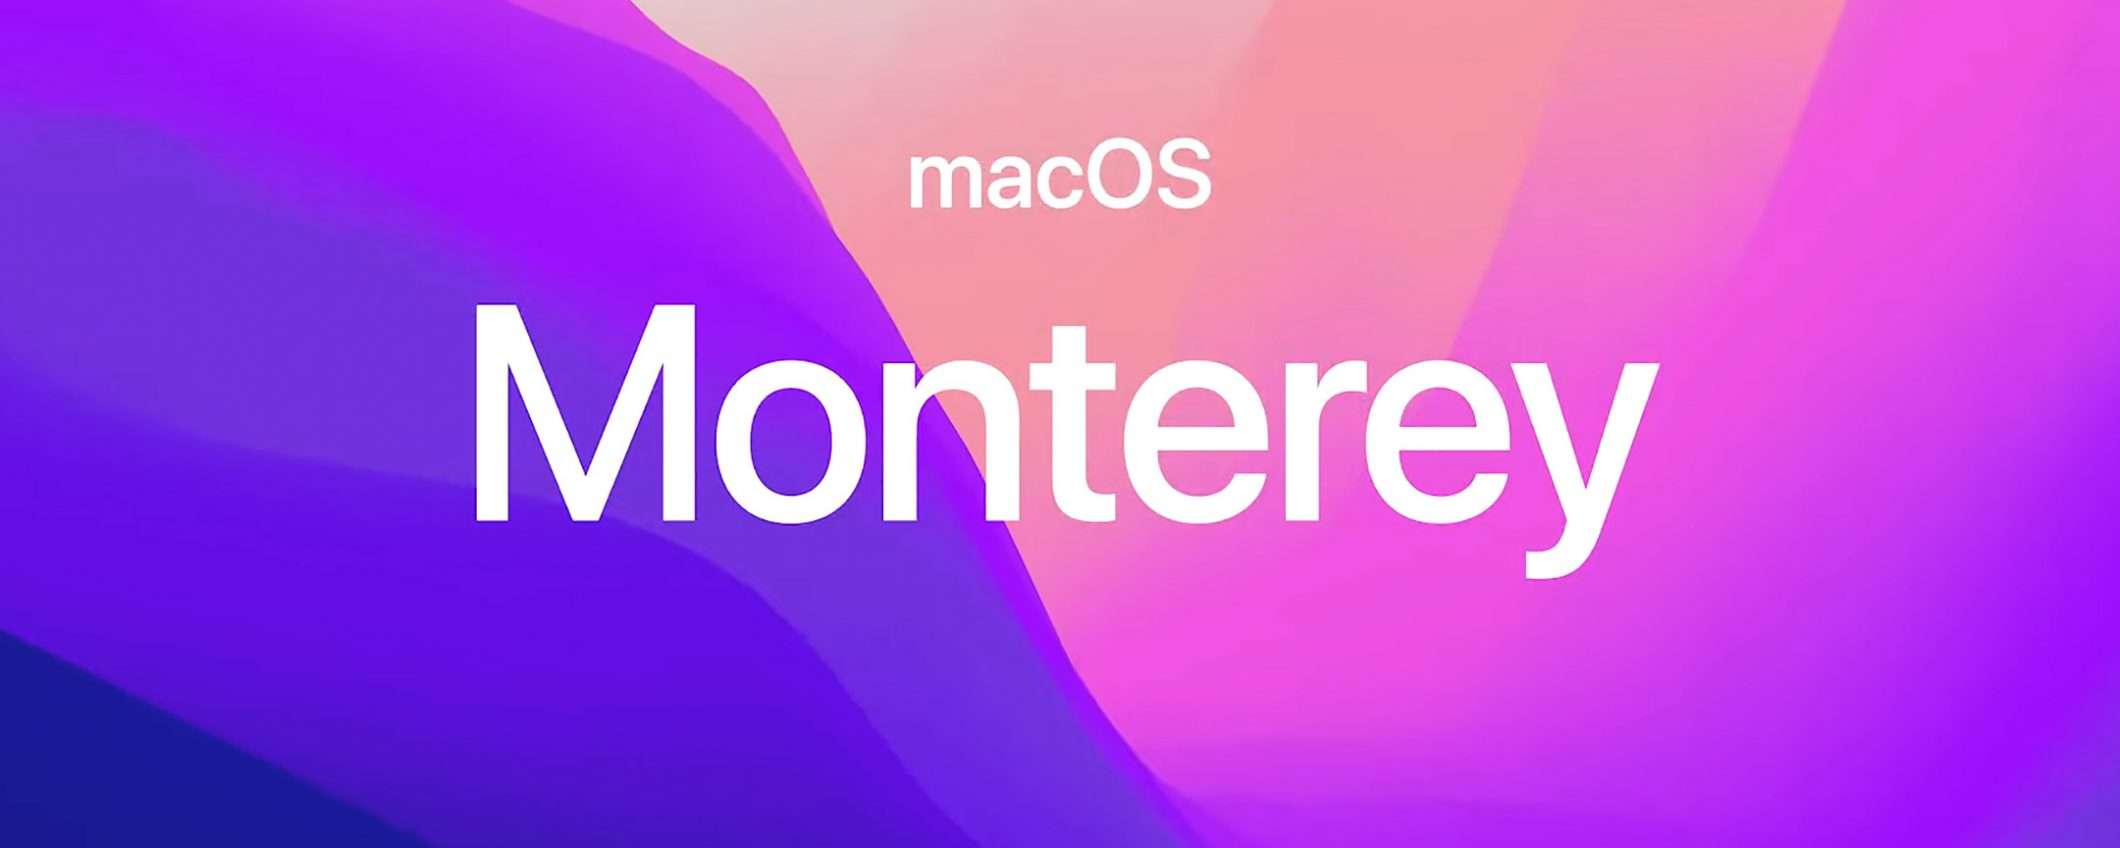 macOS Monterey è ufficiale, l'annuncio a WWDC21